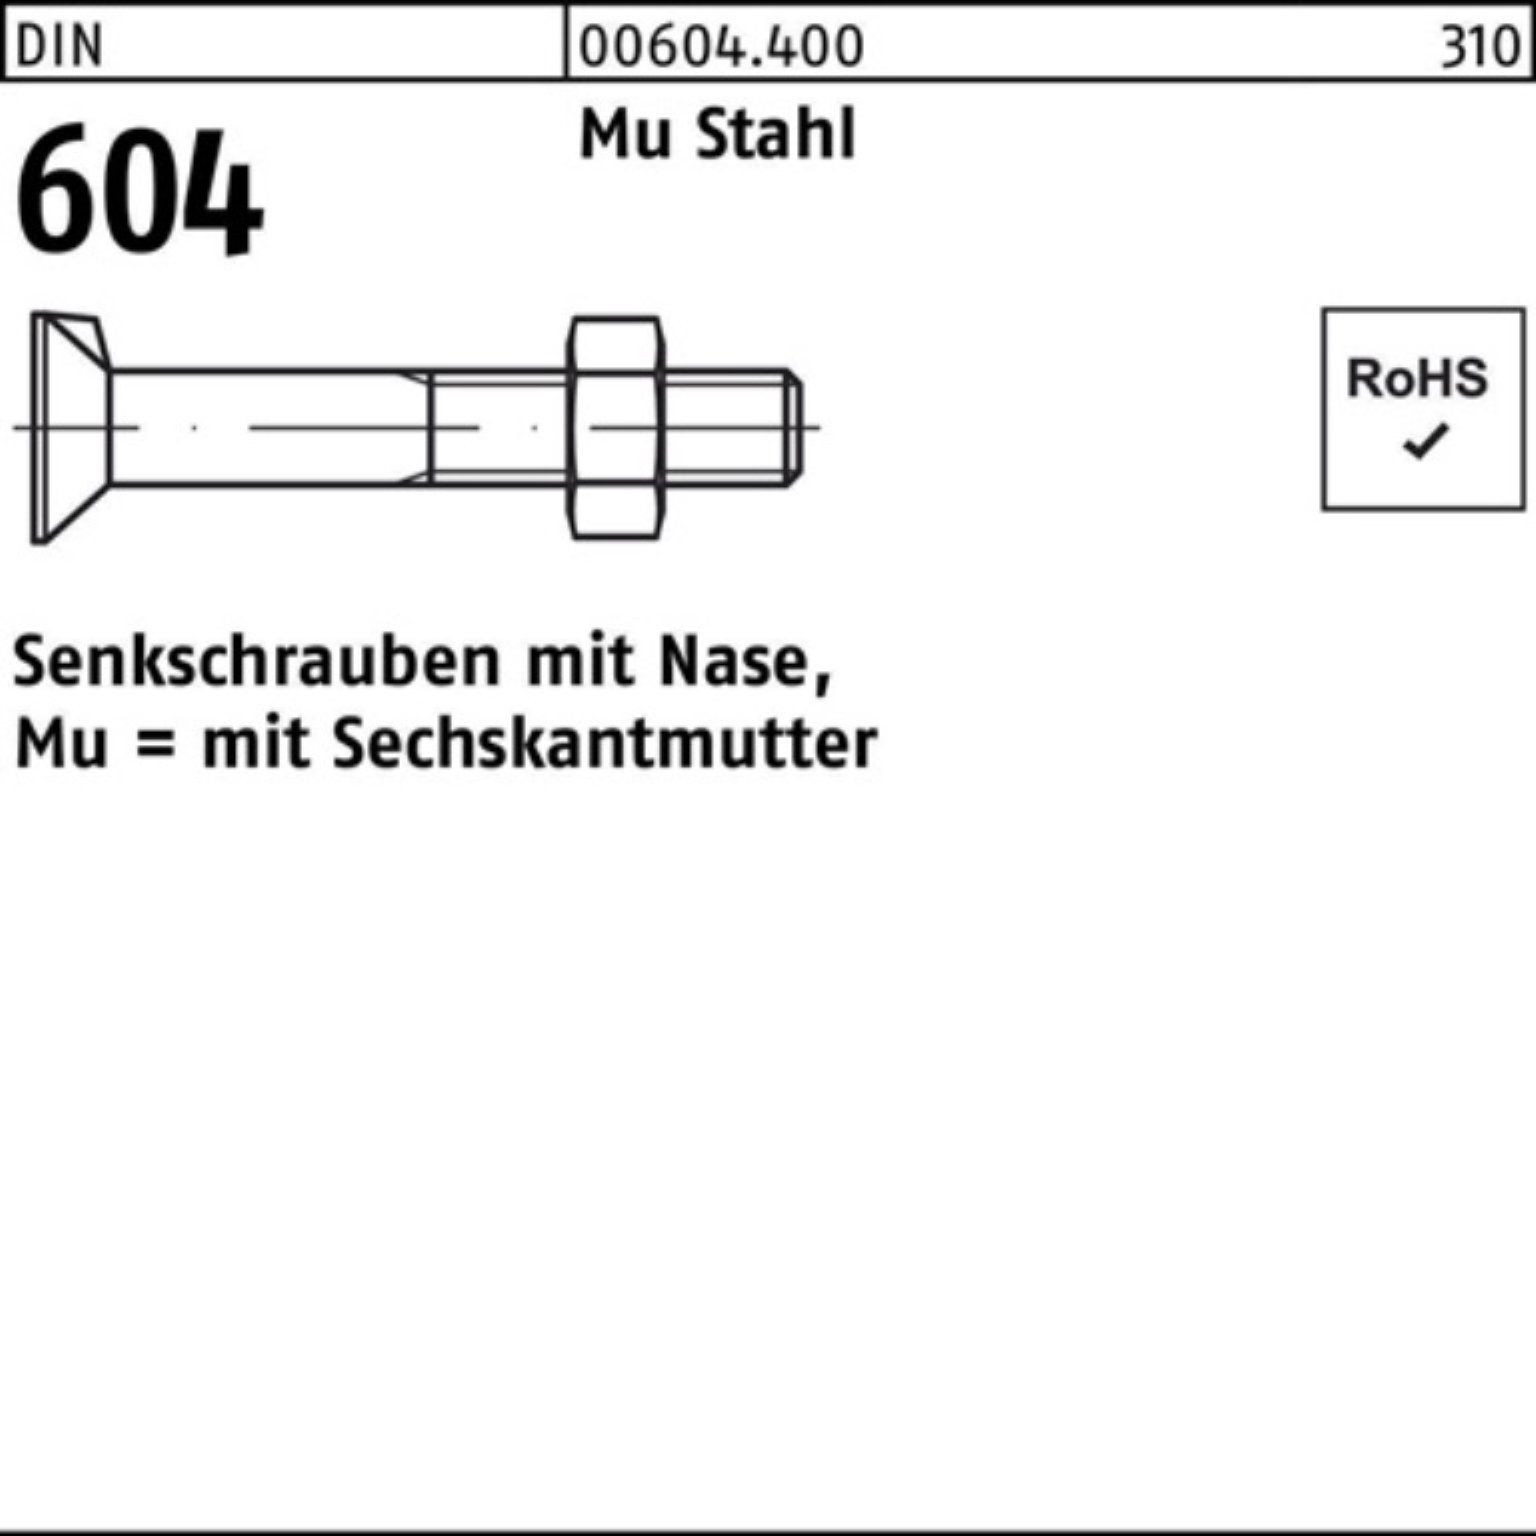 Reyher Senkschraube 80 DIN Stahl 100er Pack Nase/6-ktmutter Mu 4.6 M16x 2 Senkschraube 604